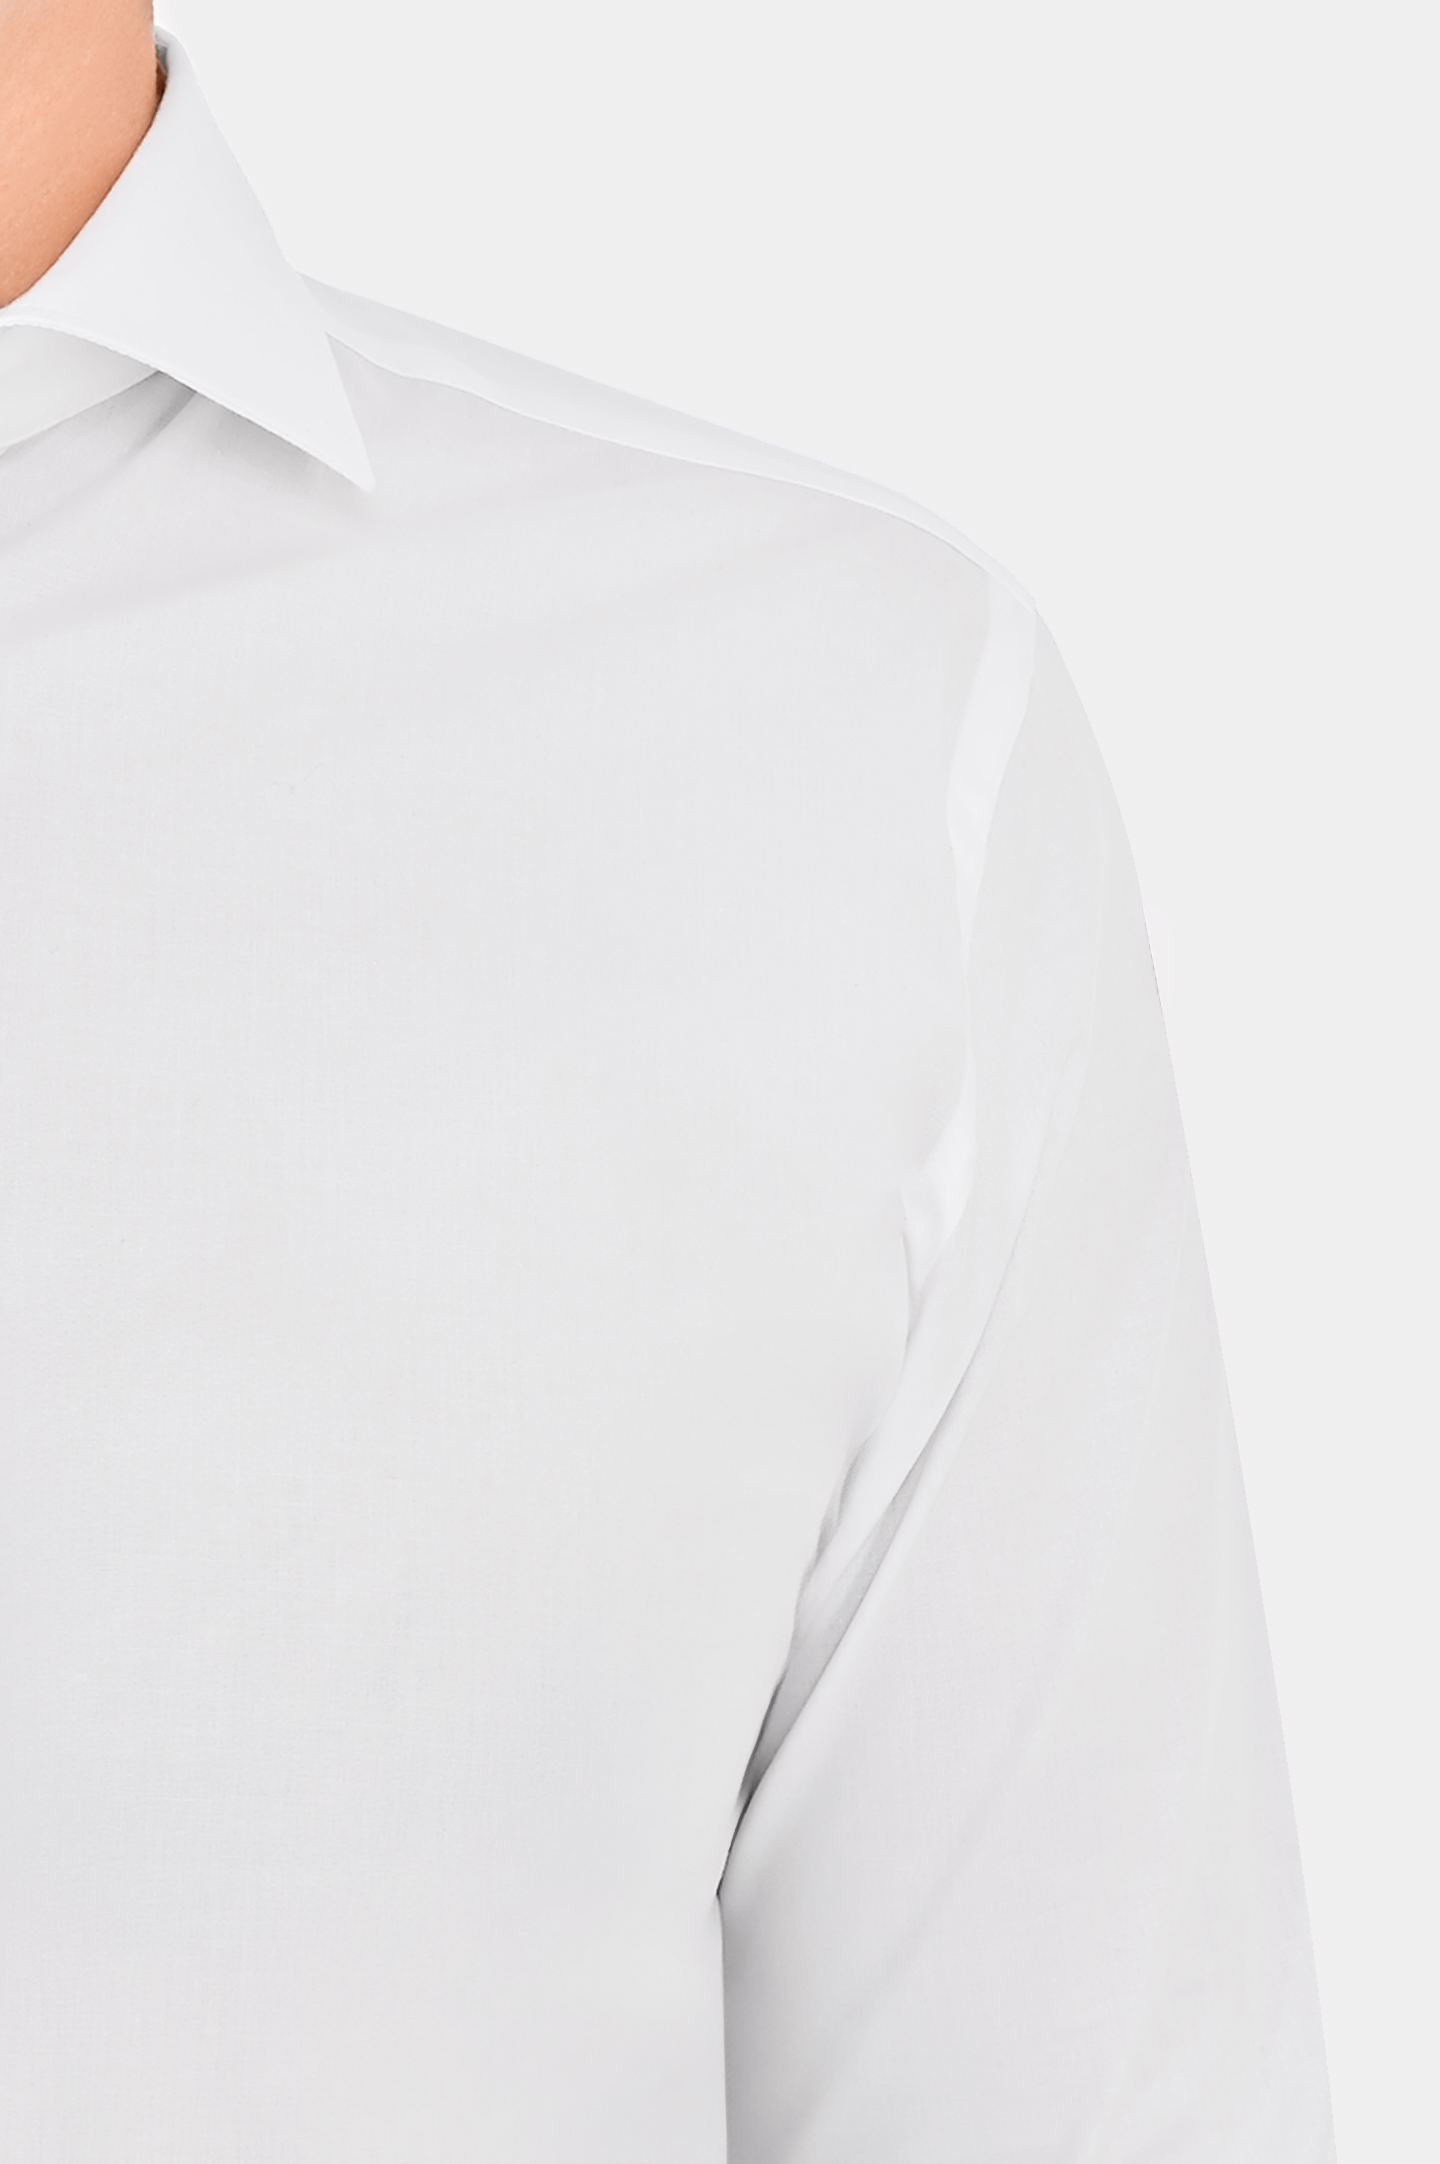 Рубашка из хлопка и эластана CANALI GD02832 7C3/1, цвет: Белый, Мужской